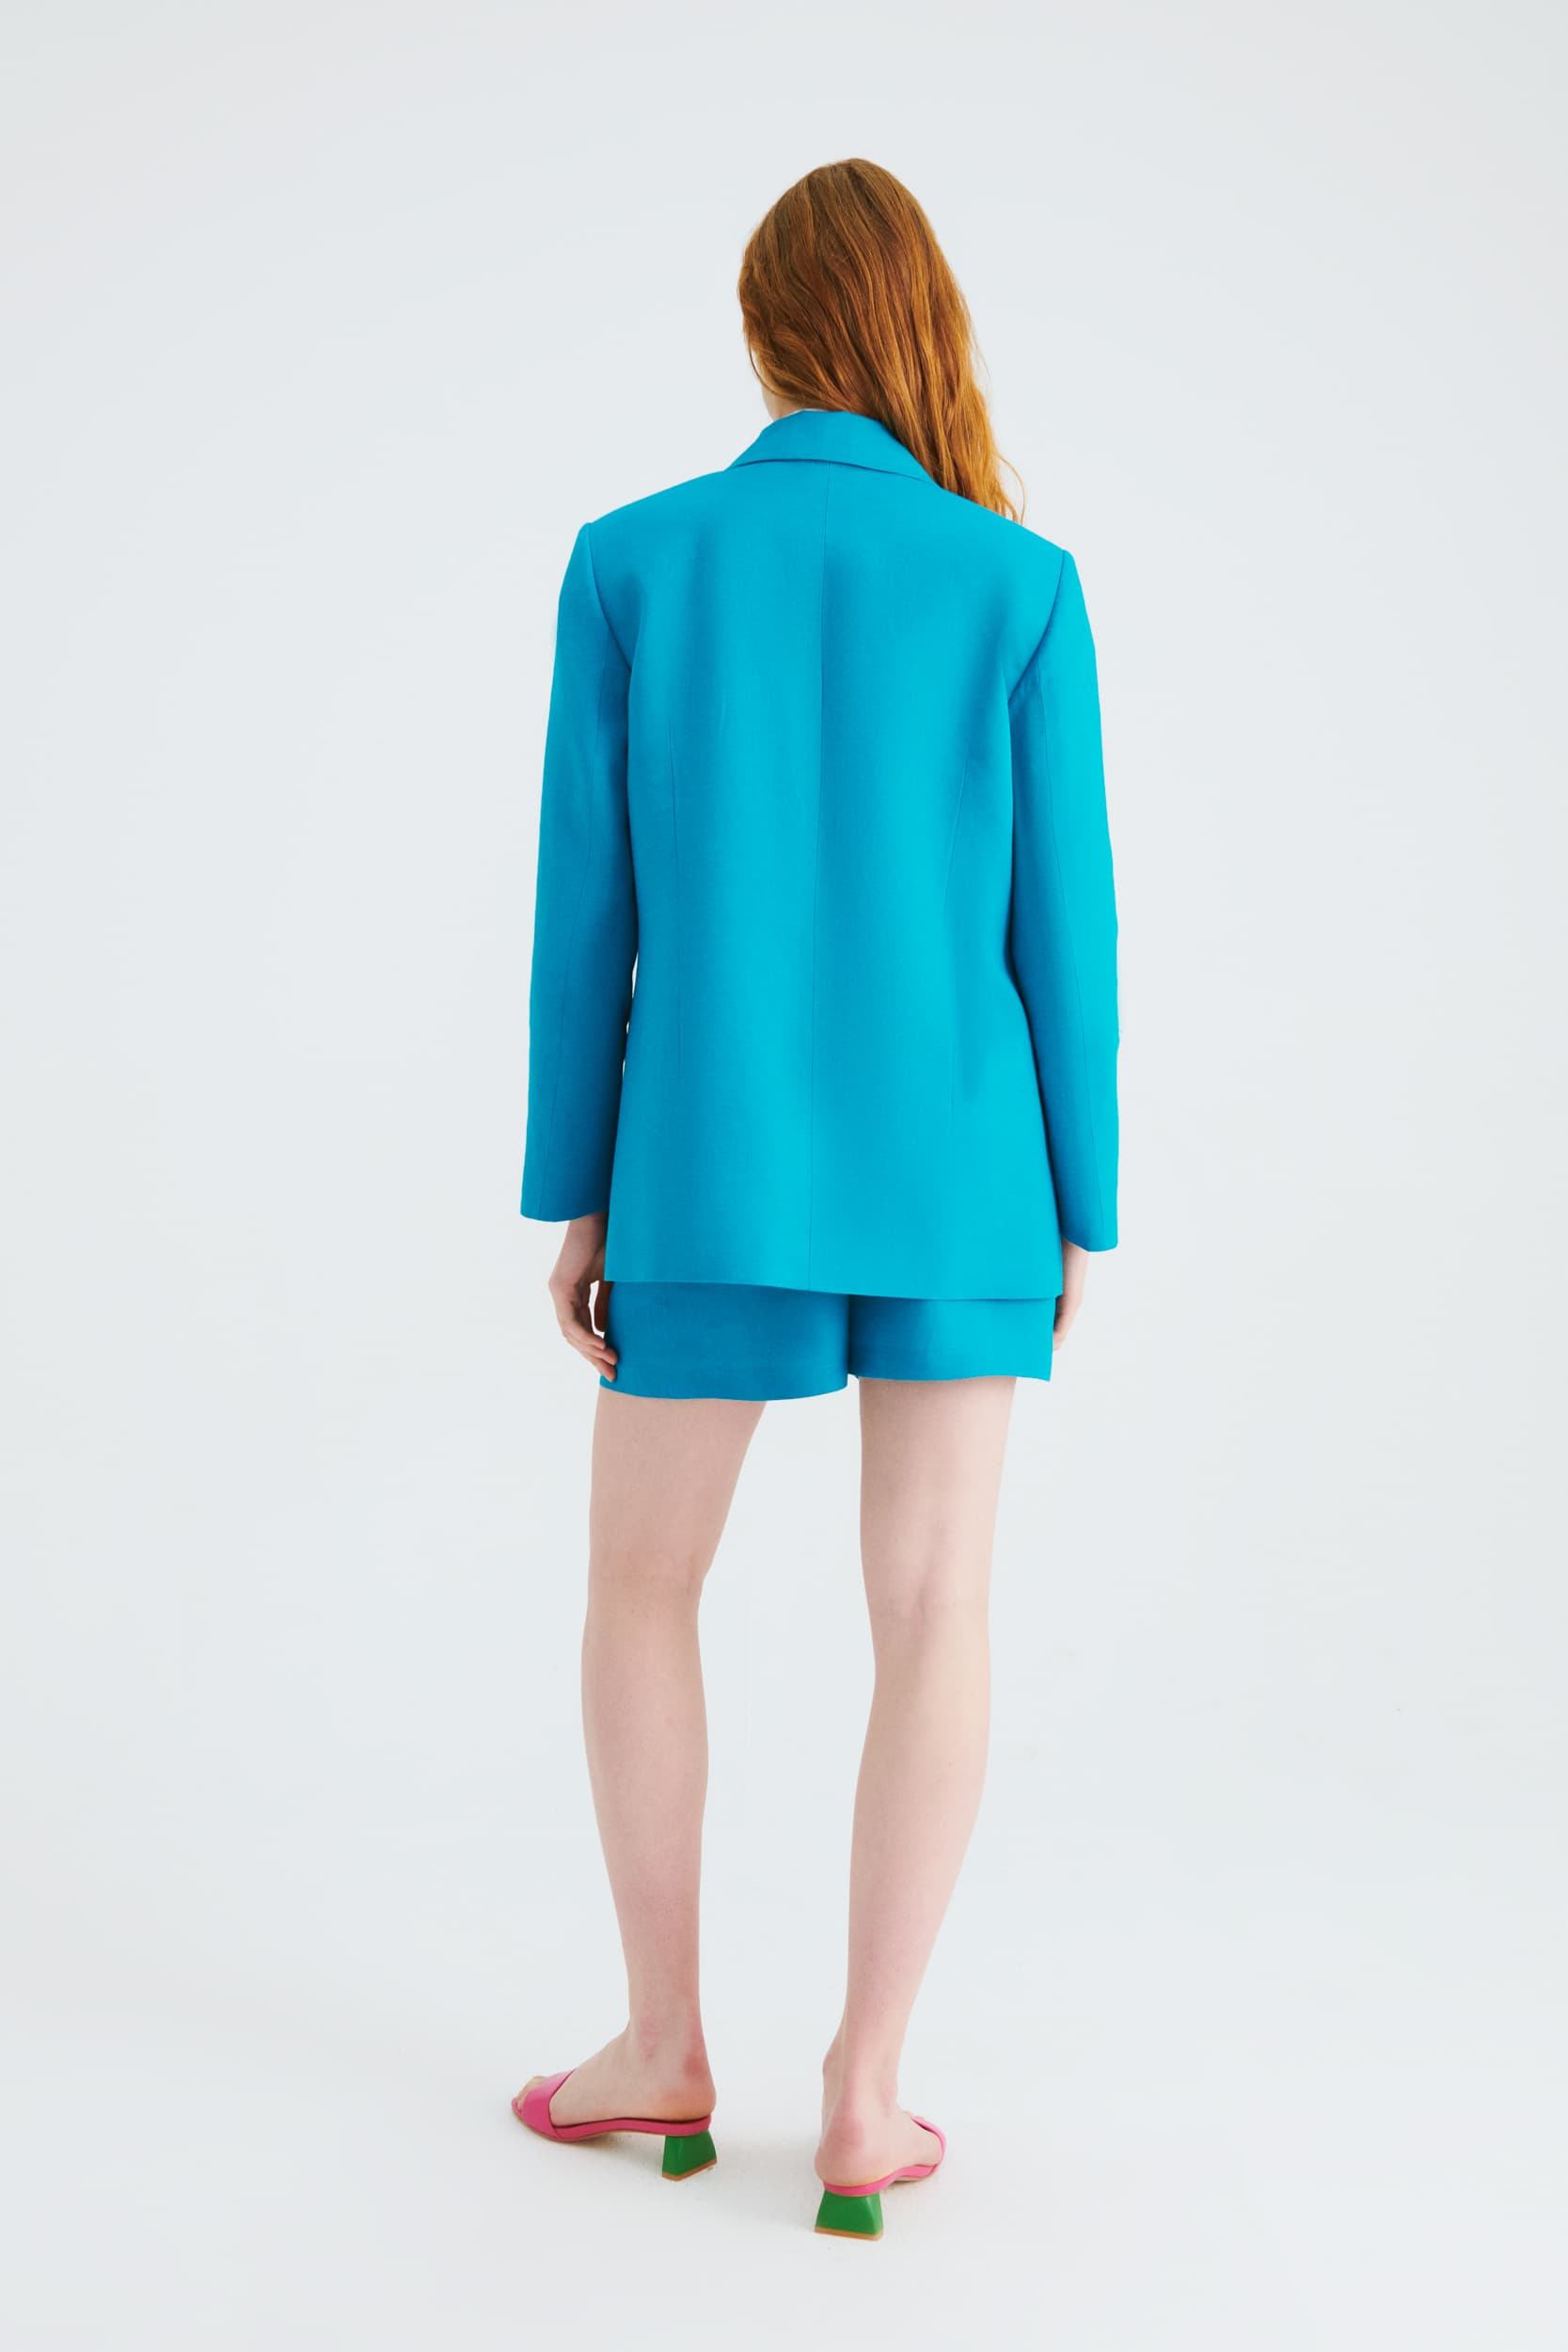 Pocket Turquoise Jacket --[TURQUOISE]